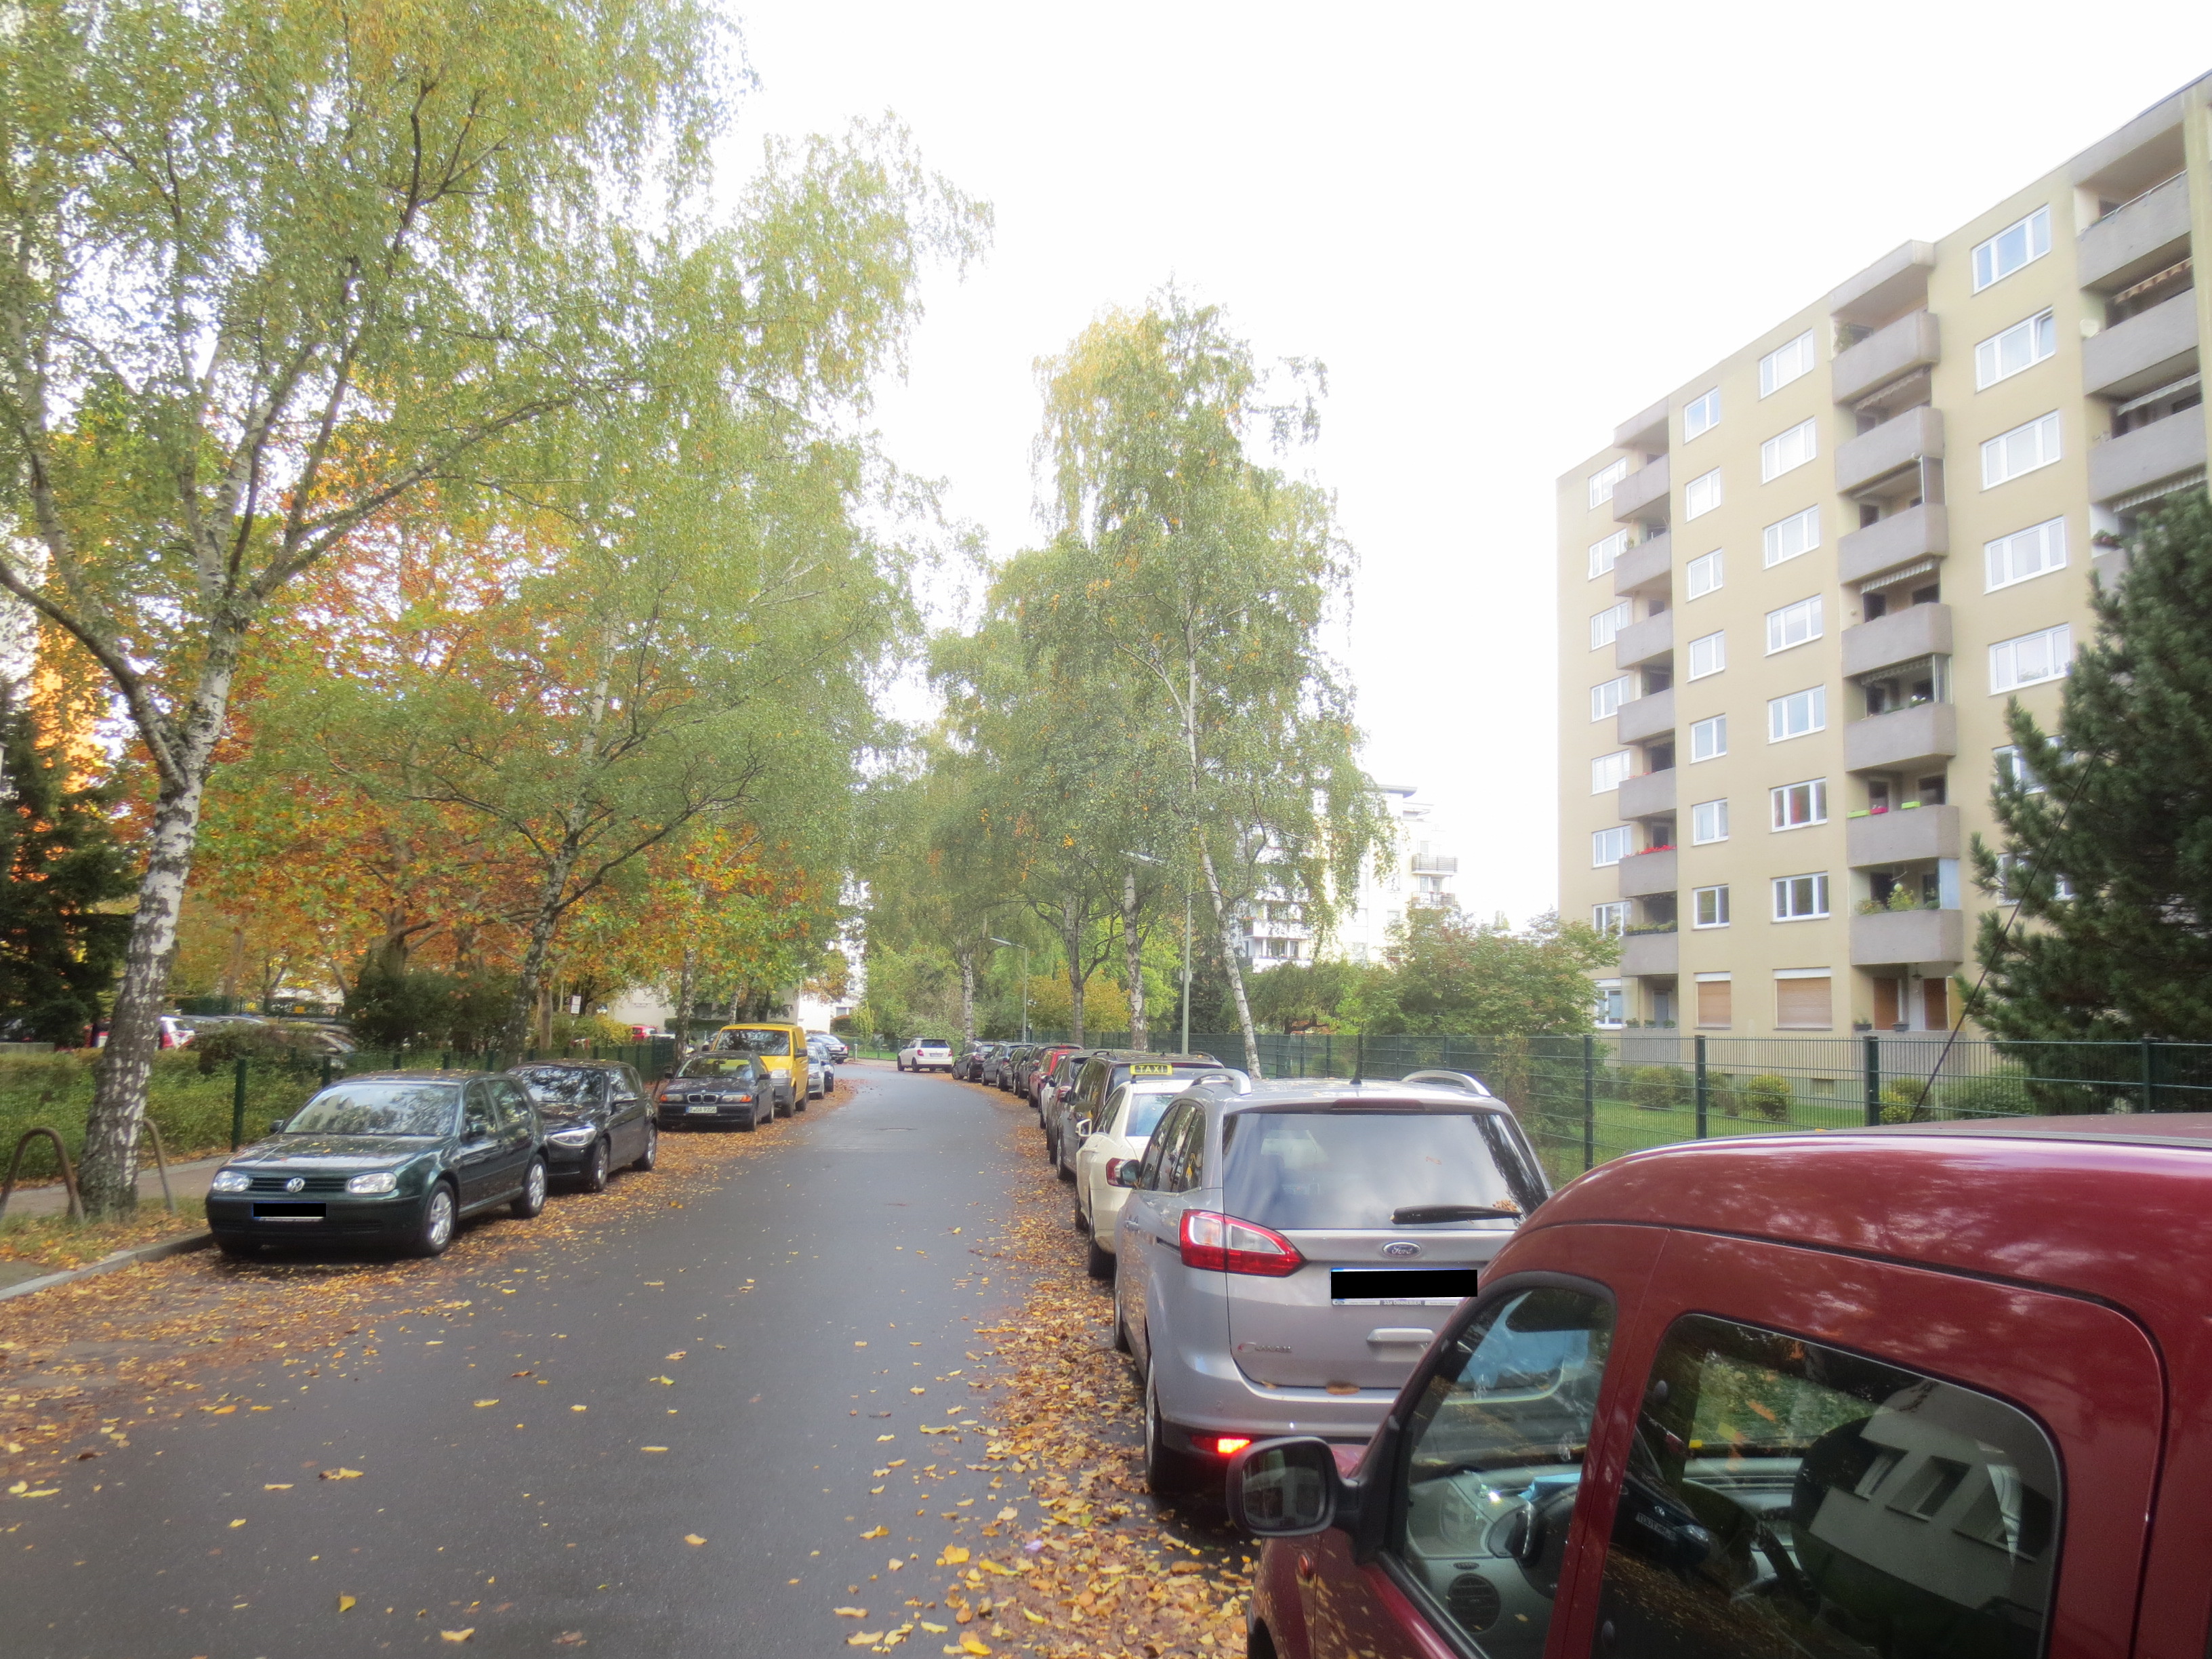 Wohnen im grünen Marienfelde: sehr schöne, bezugsfreie Eigentumswohnung mit ca. 78 m² - 3 Zimmer ...